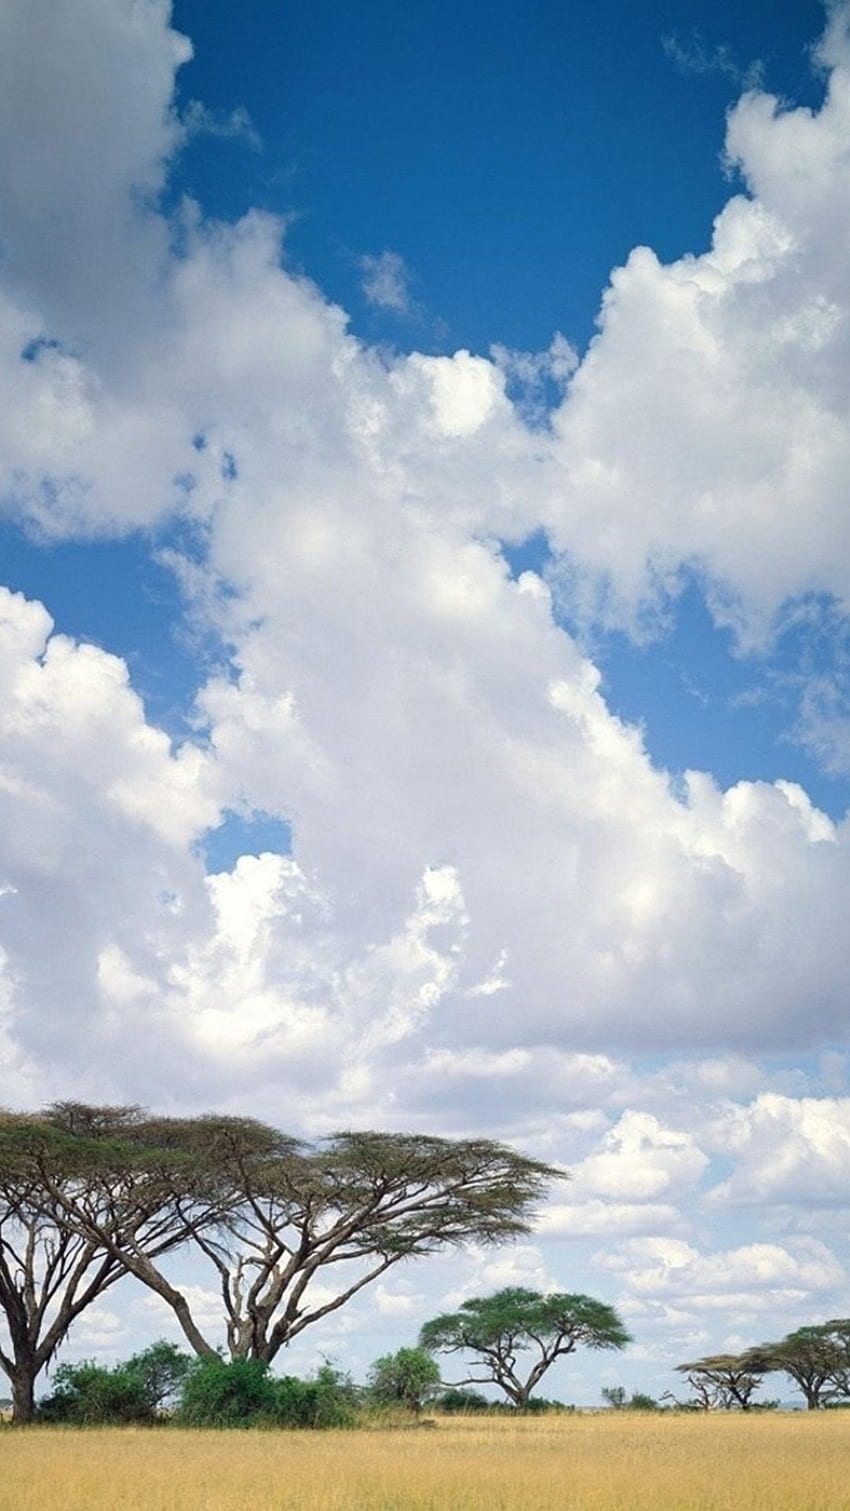 Đám mây Safari - Hình nền iPhone sẽ giúp bạn trang trí cho thiết bị của mình với hình ảnh đẹp và đầy sáng tạo. Với những bức ảnh tuyệt đẹp về đám mây trên nền trời xanh đẹp như tranh, bạn sẽ cảm nhận được sức mạnh và vẻ đẹp của thiên nhiên. Hãy xem hình ảnh liên quan để thể hiện phong cách riêng của mình và mang lại sự ấn tượng cho những người xung quanh.